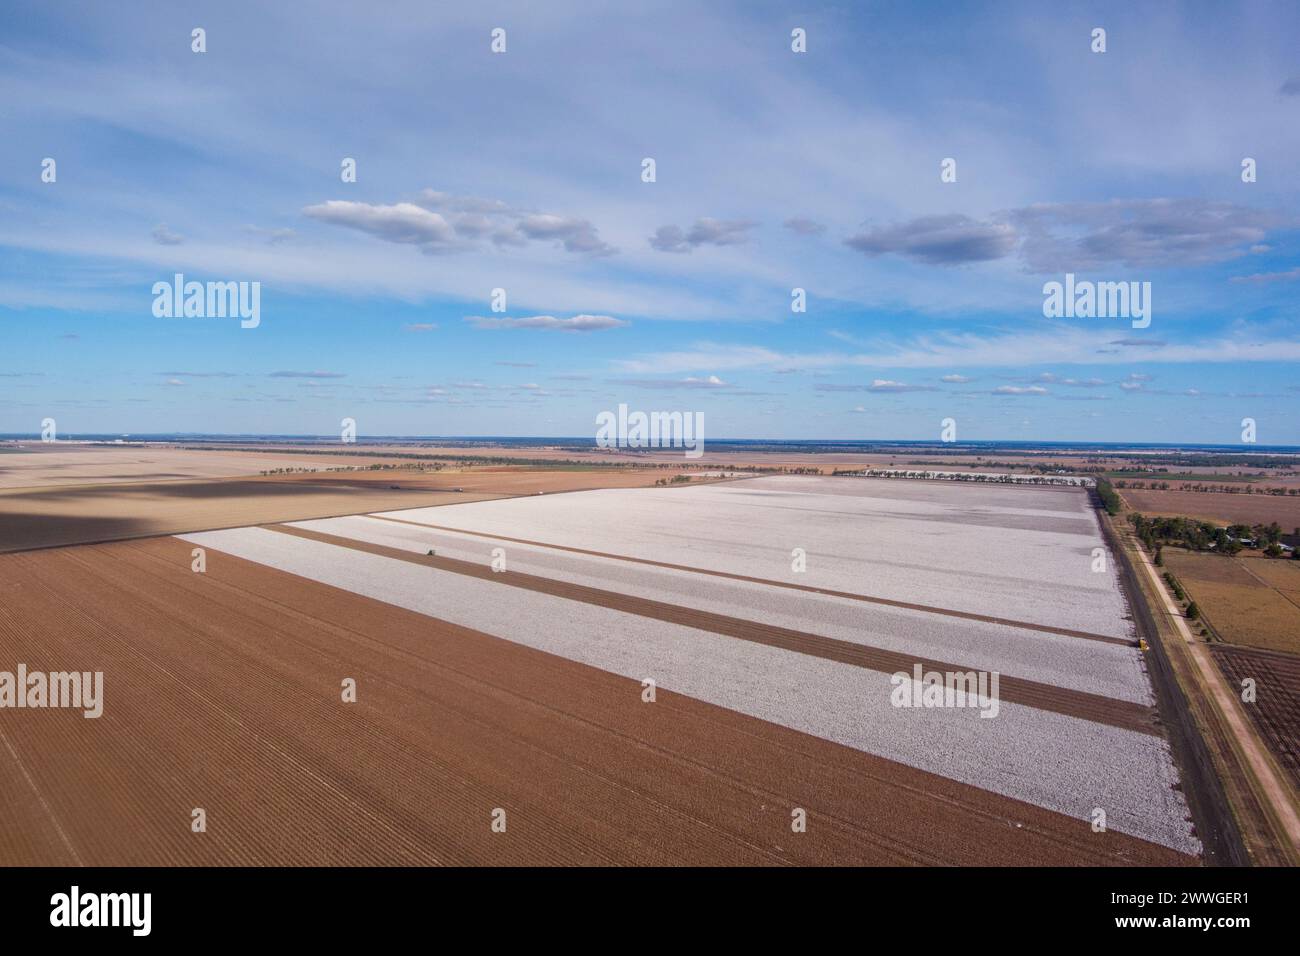 Aérien de champs de coton commerciaux de grande superficie récoltés près de Dalby Queensland Australie Banque D'Images